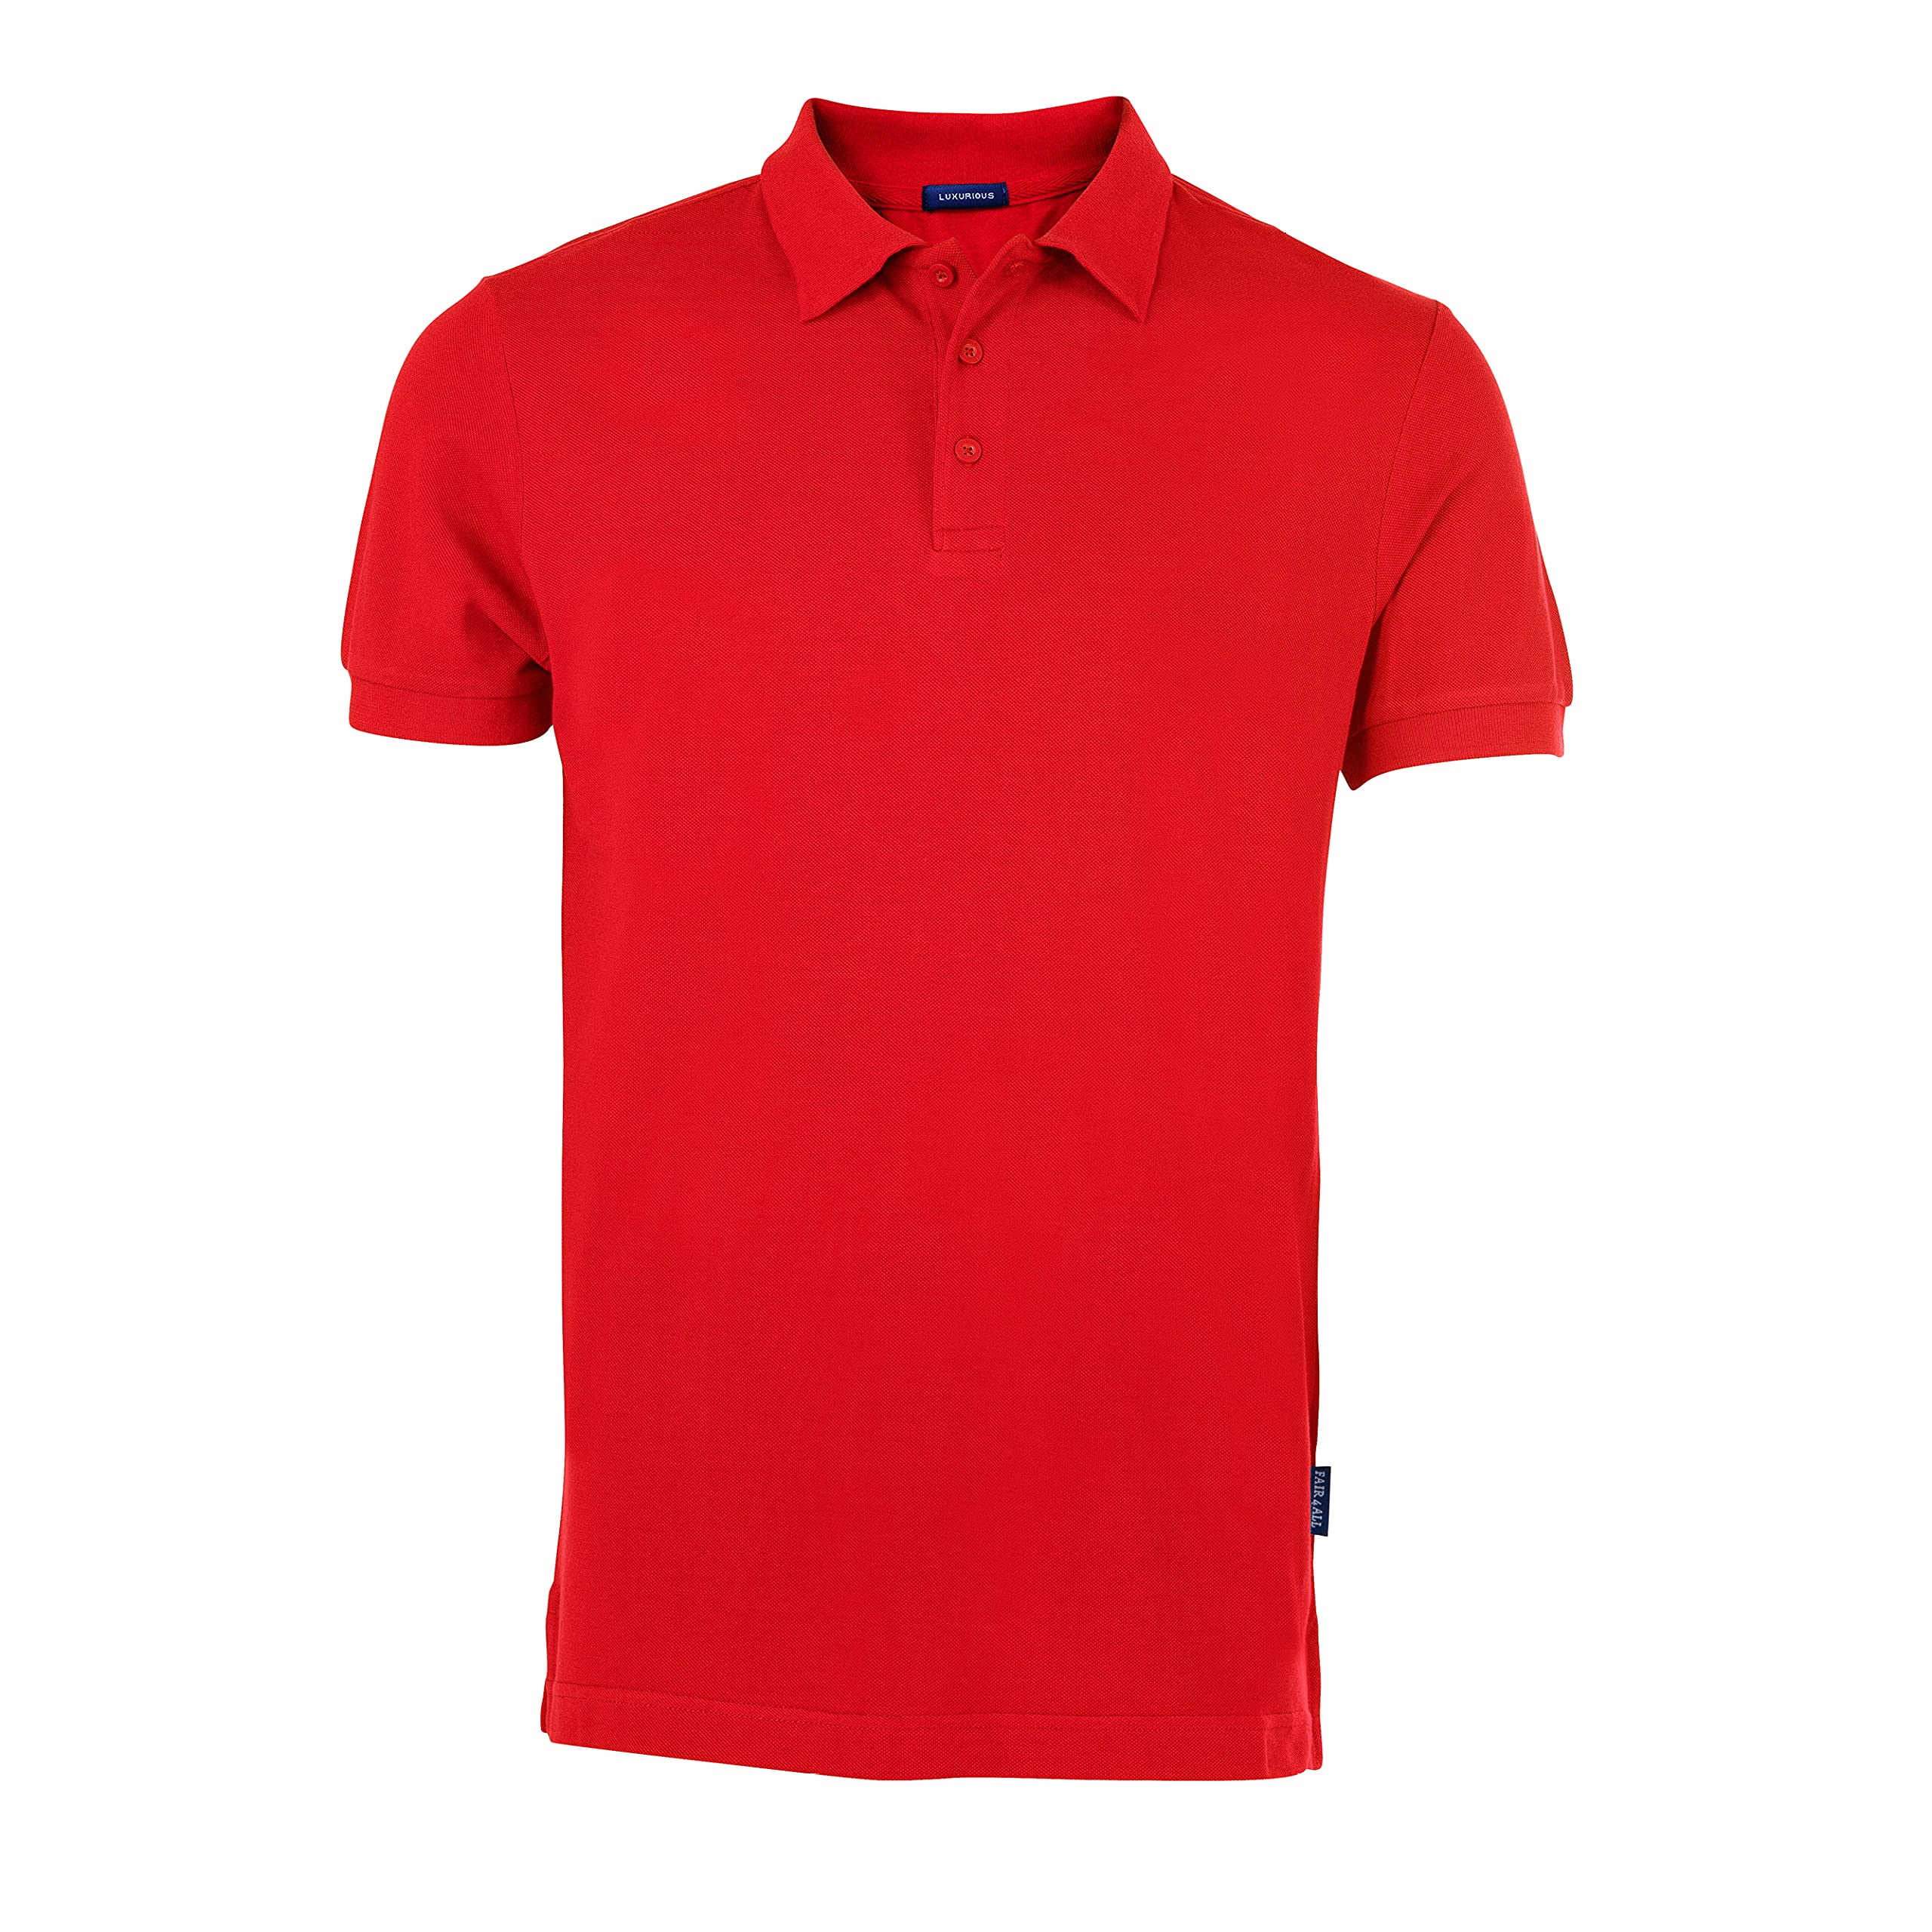 HRM Herren Luxury Polo, rot, Gr. 3XL I Premium Polo Shirt Herren aus 100% Baumwolle I Basic Polohemd bis 60°C farbecht waschbar I Hochwertige & nachhaltige Herren-Bekleidung